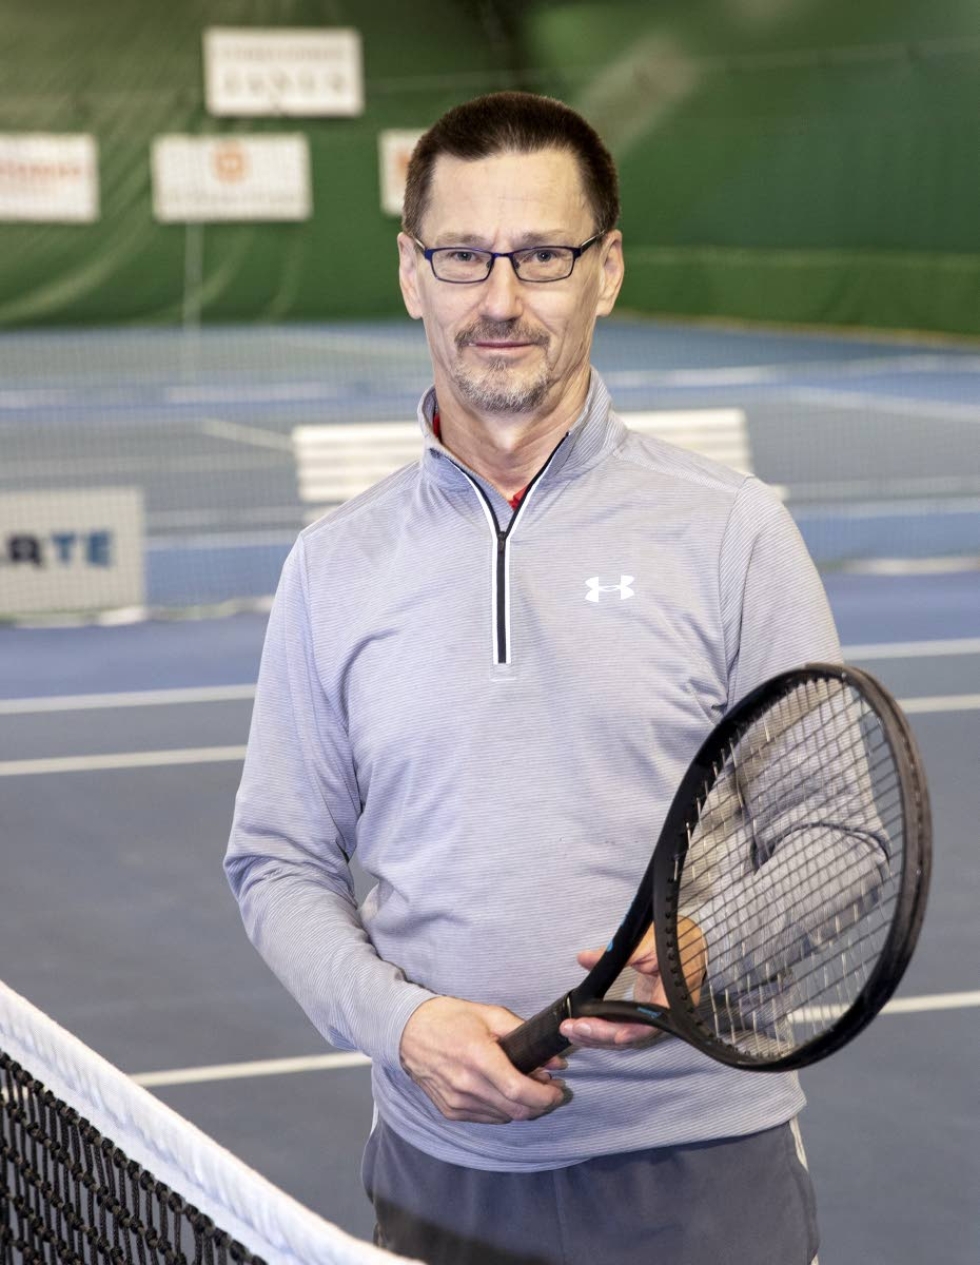 Jari Hurskainen on joutunut jättämään työelämän ja rakkaan lajin tenniksen pelaamisen. 